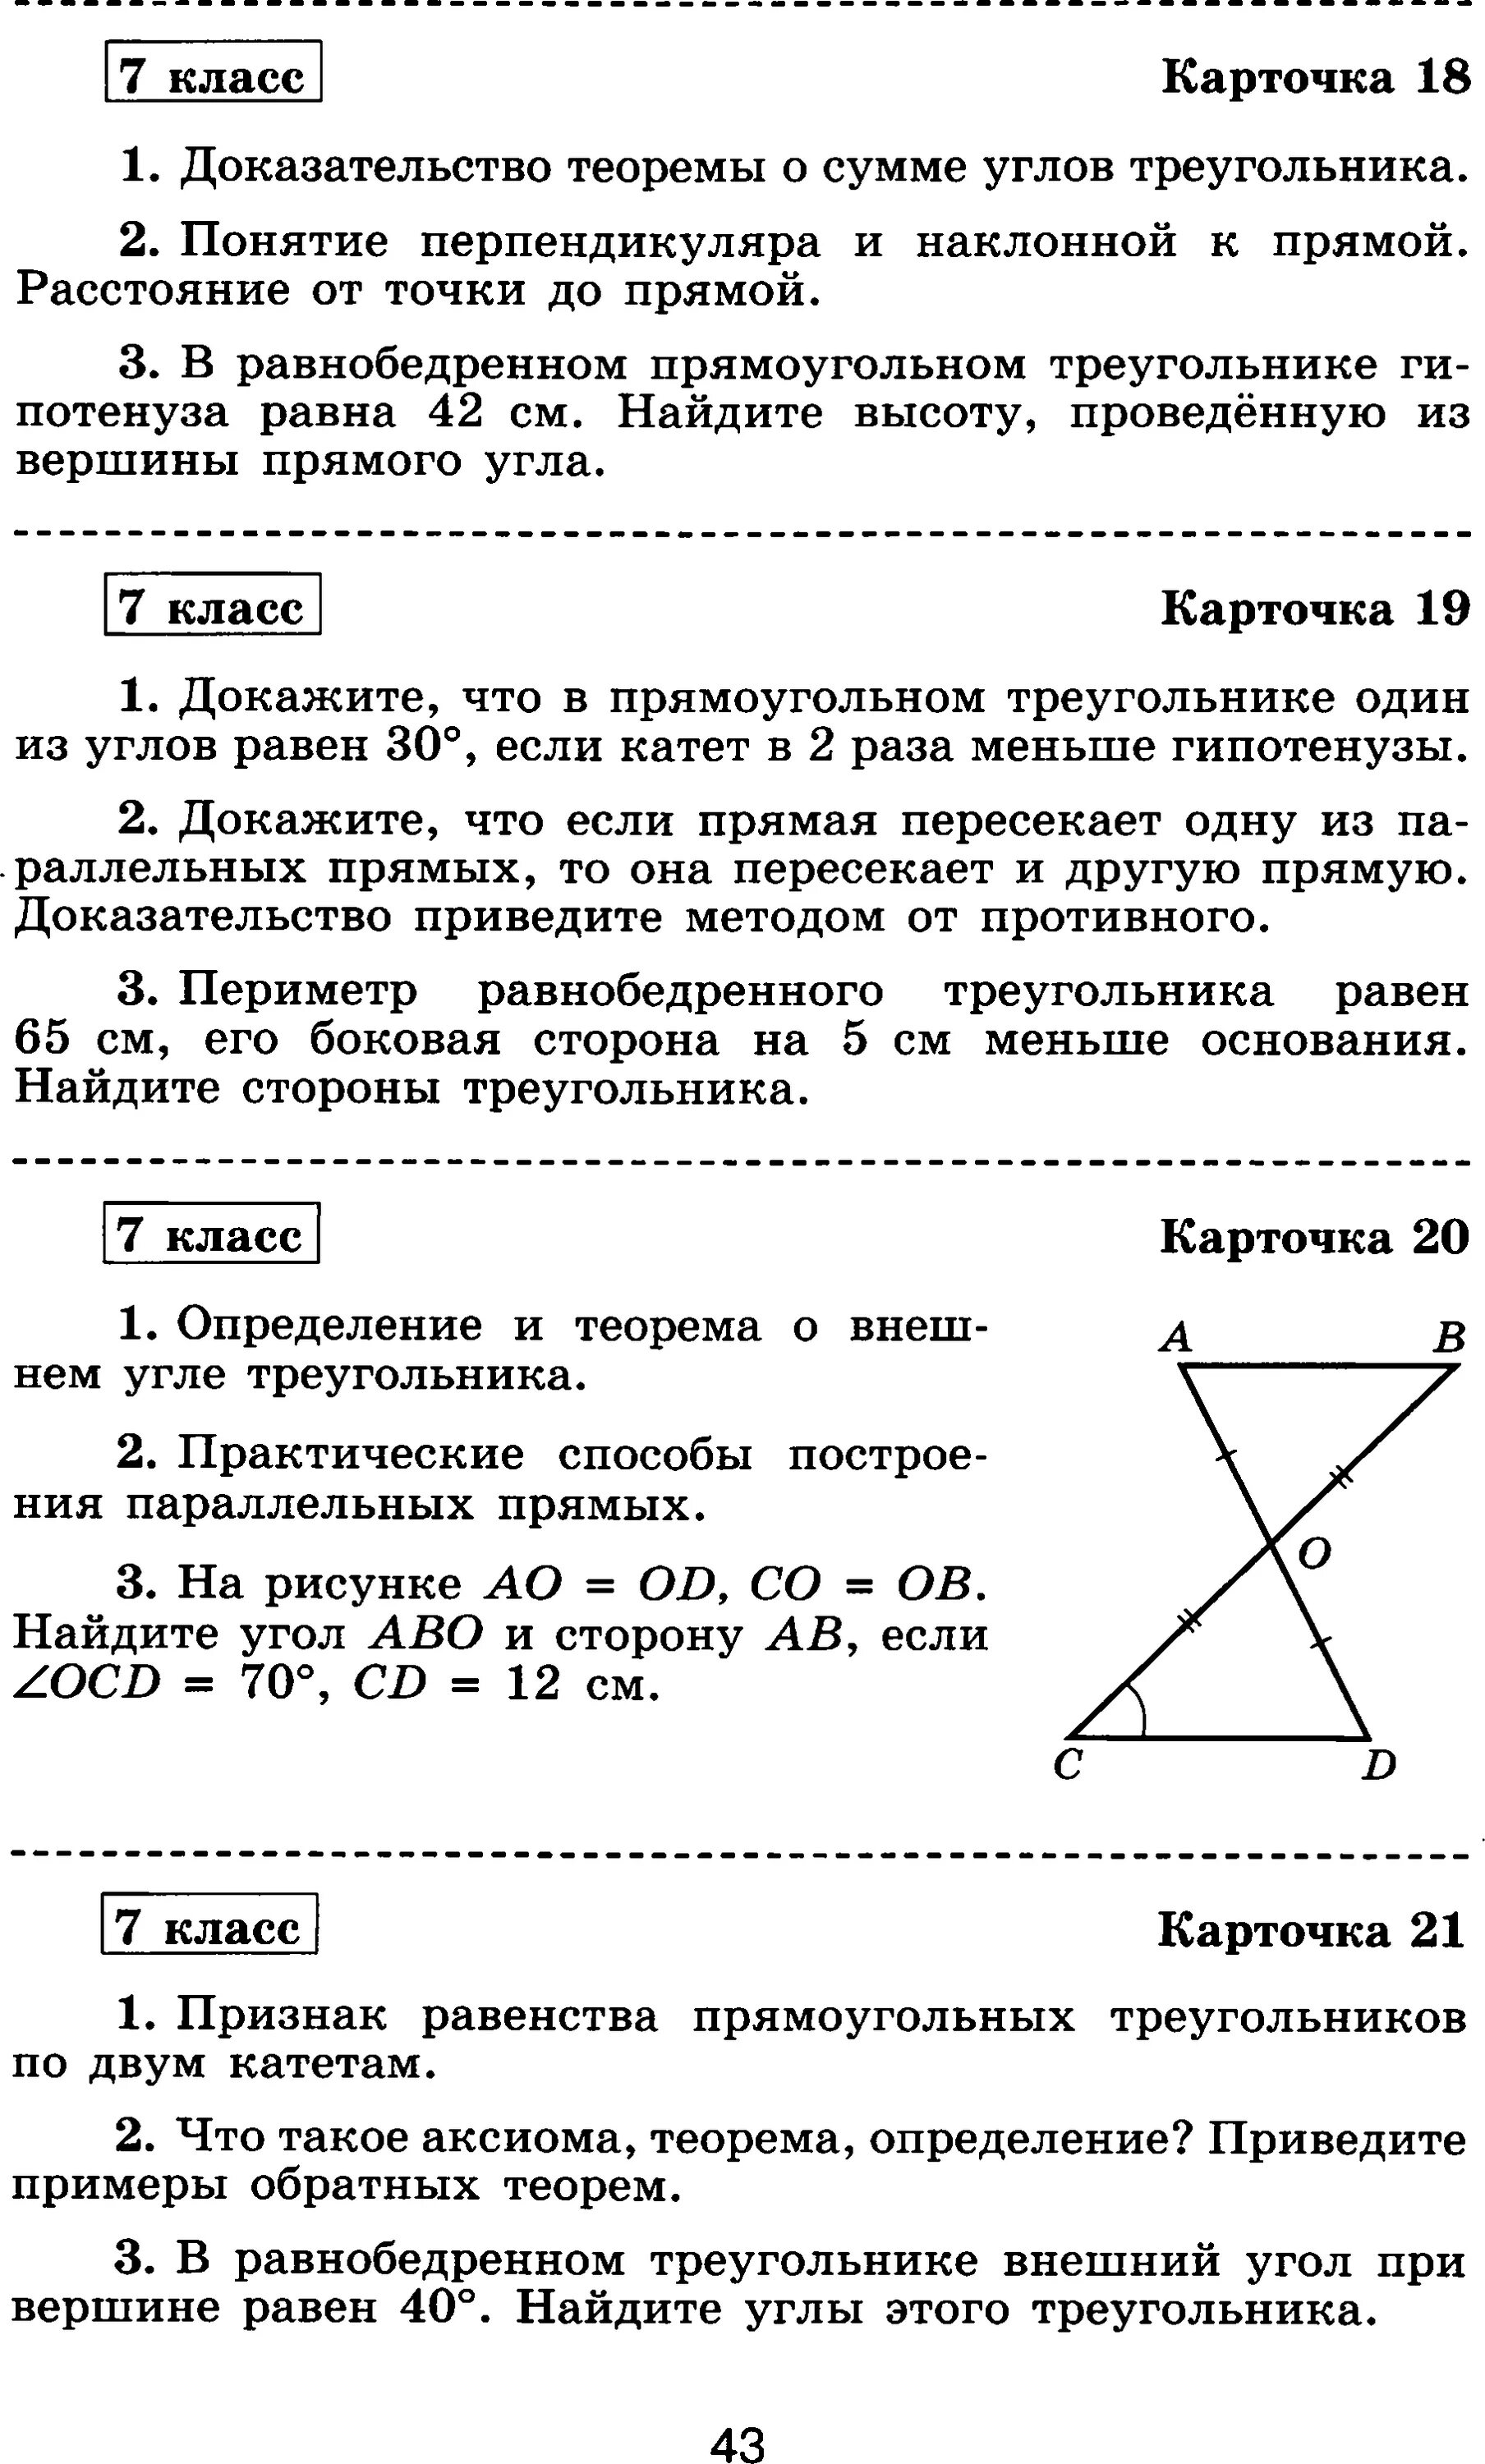 Ответы самостоятельная работа по геометрии 7. Теоретический зачет по геометрии 7 класс. Итоговый зачет по геометрии 7 класс. Карточки по геометрии 7 кл. Зачет по геометрии 7 класс карточки.